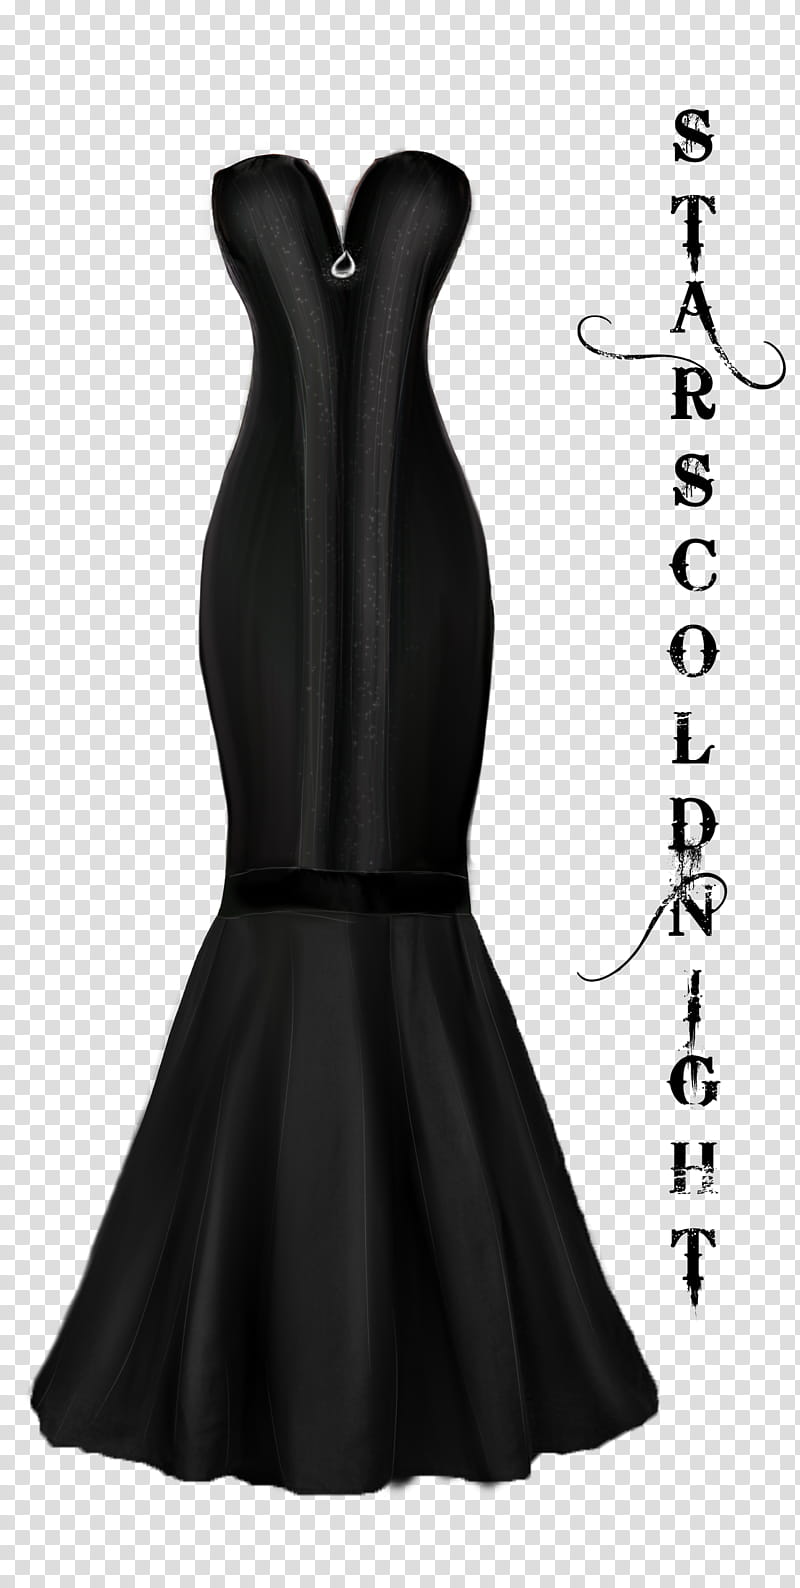 Elegant Black dress, black sweetheart-neckline strapless dress transparent background PNG clipart